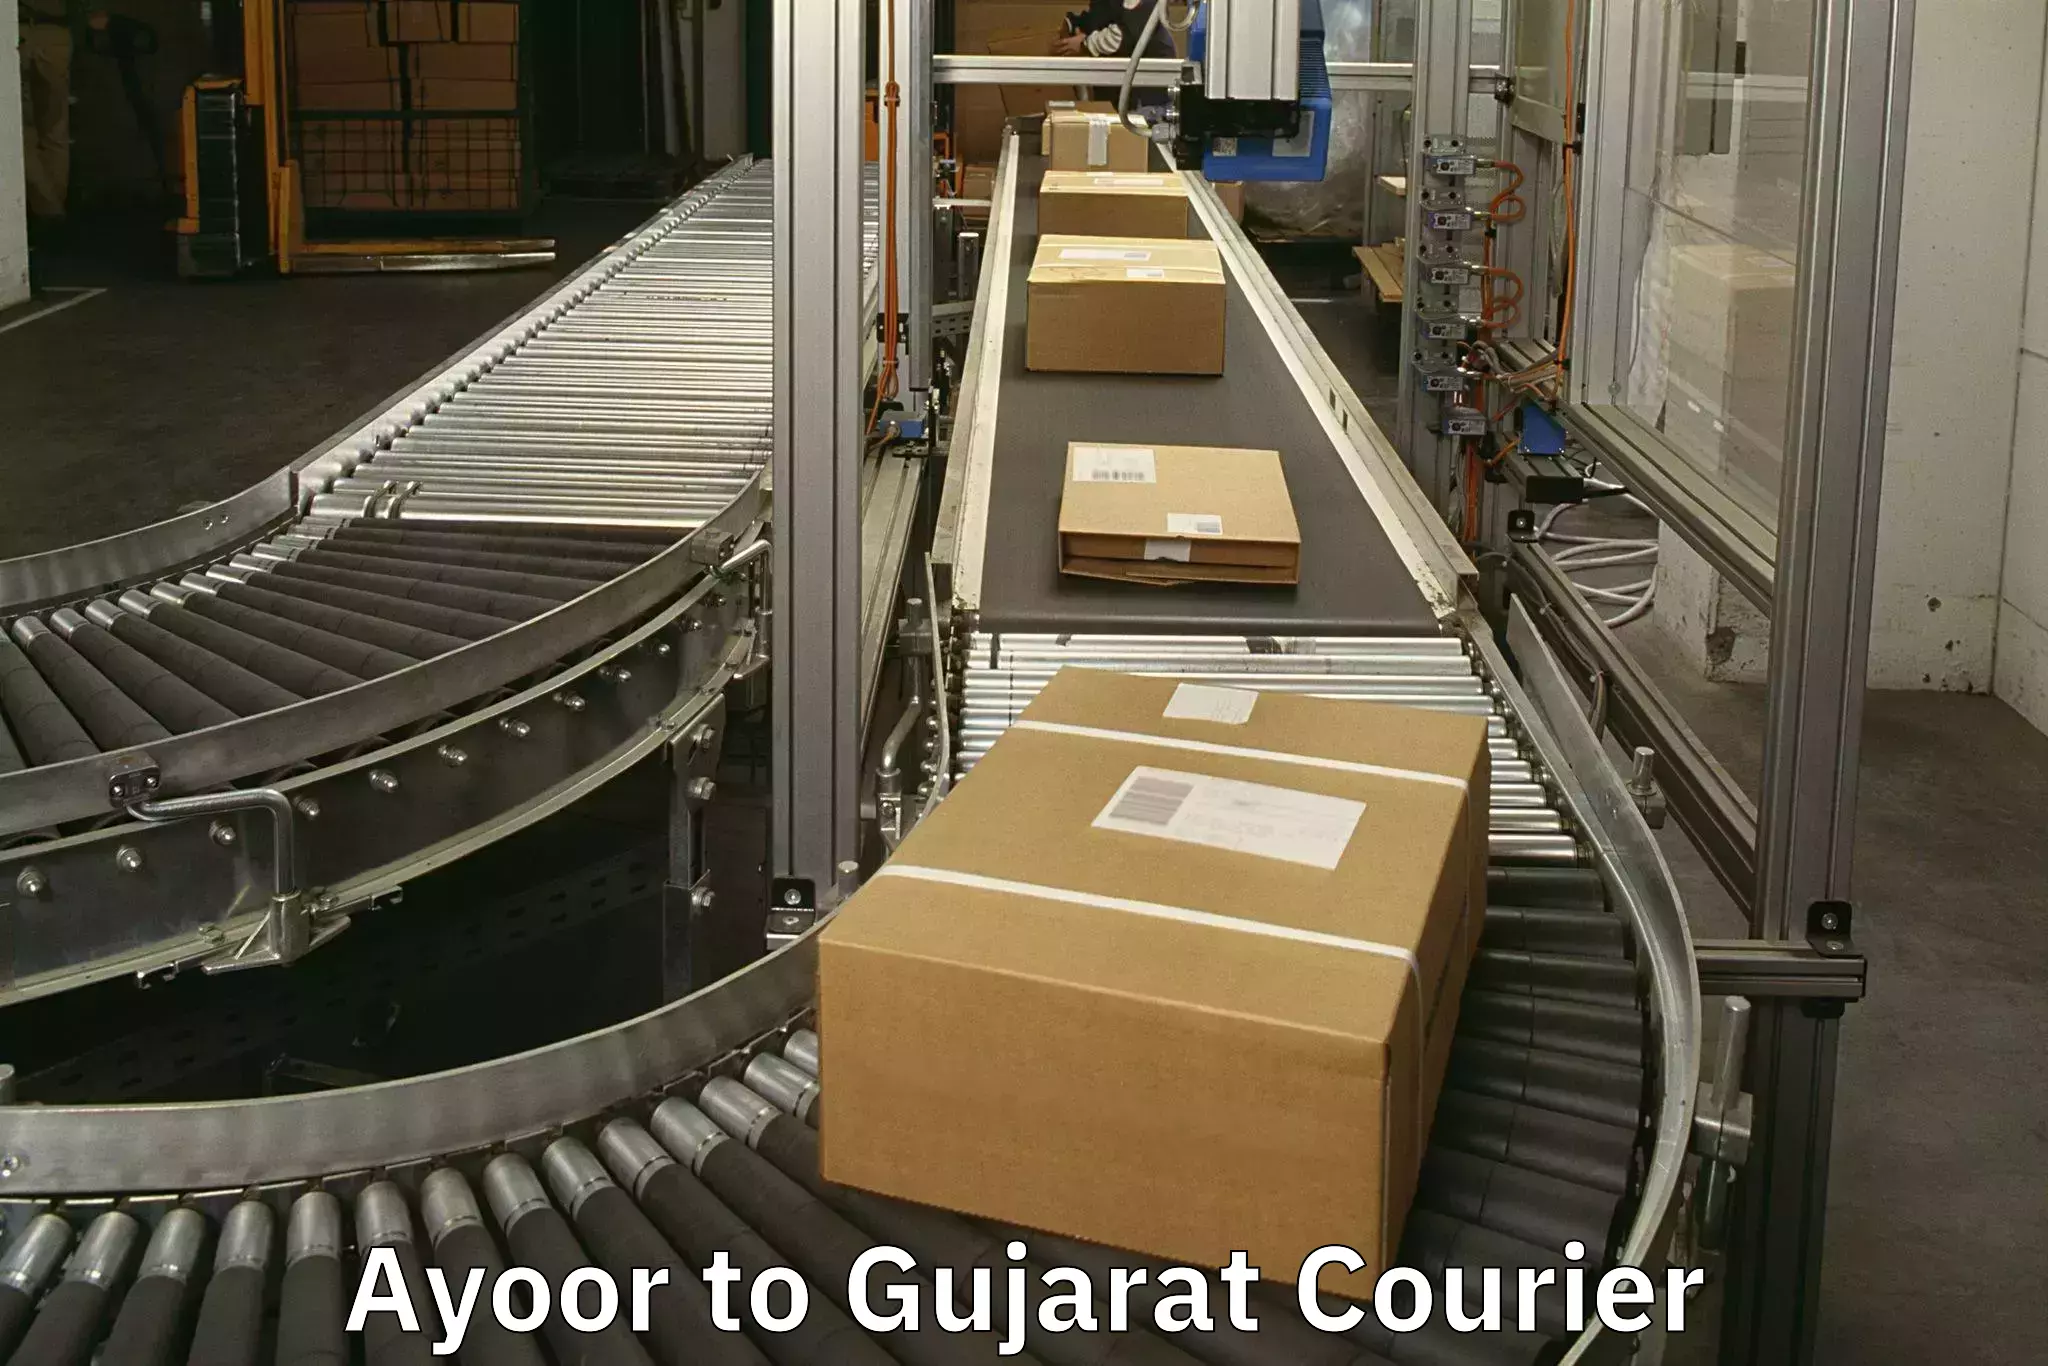 Door-to-door baggage service Ayoor to Gujarat